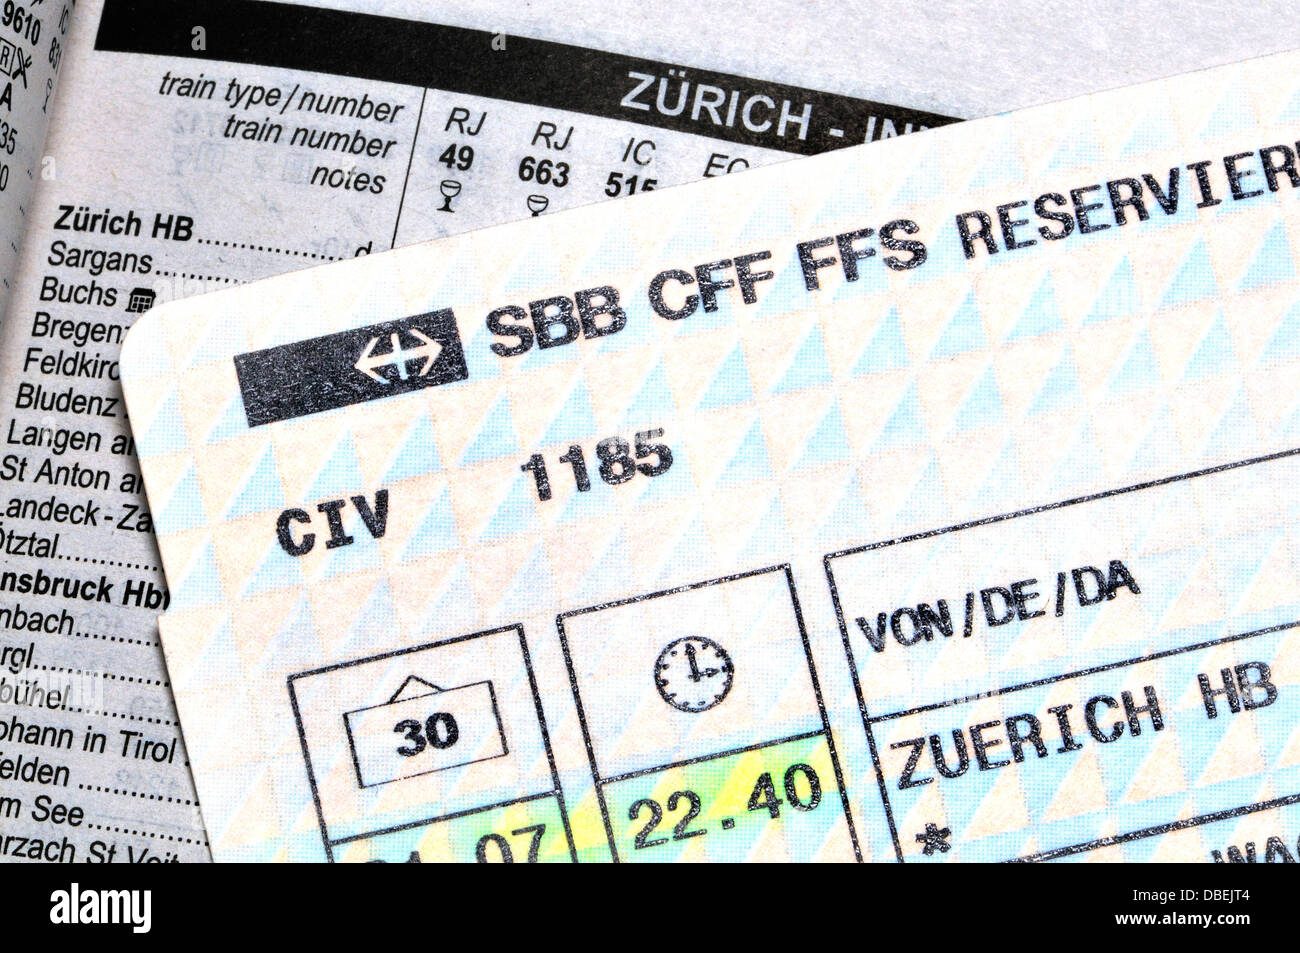 Billet de train et le calendrier - Zurich Banque D'Images